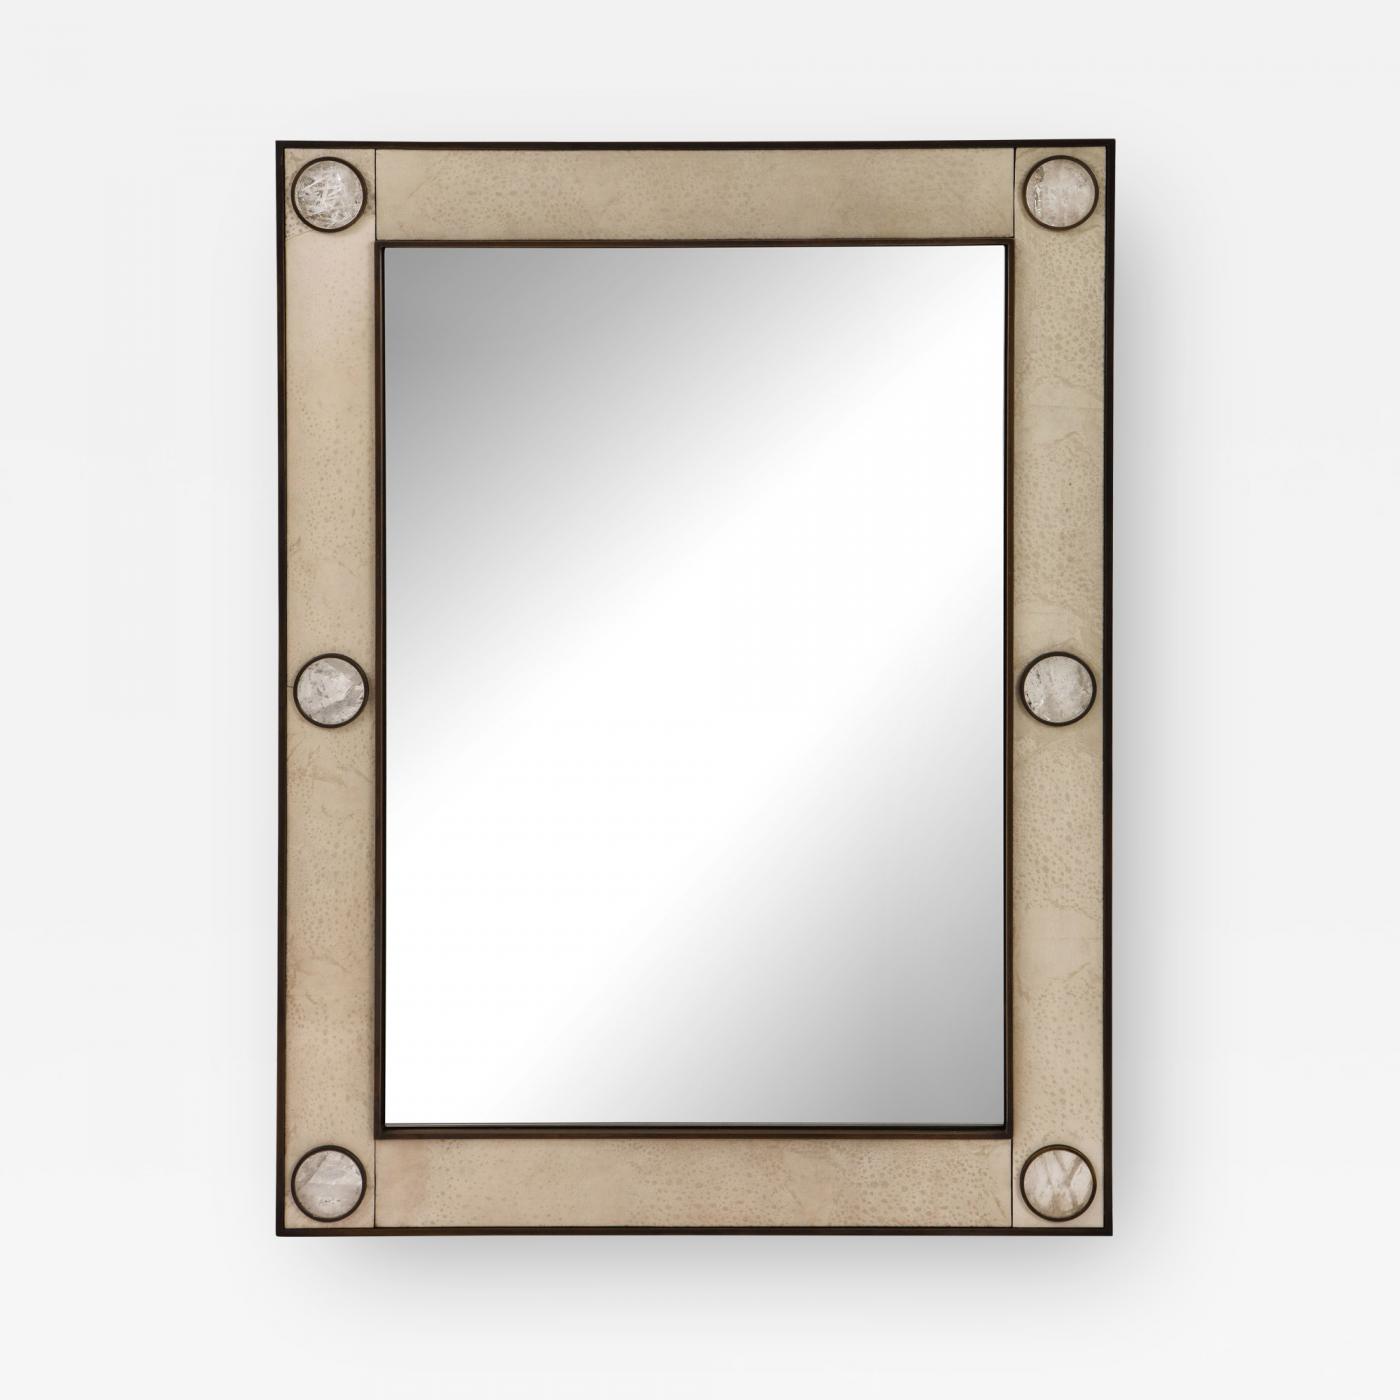 Unique mirror with a 